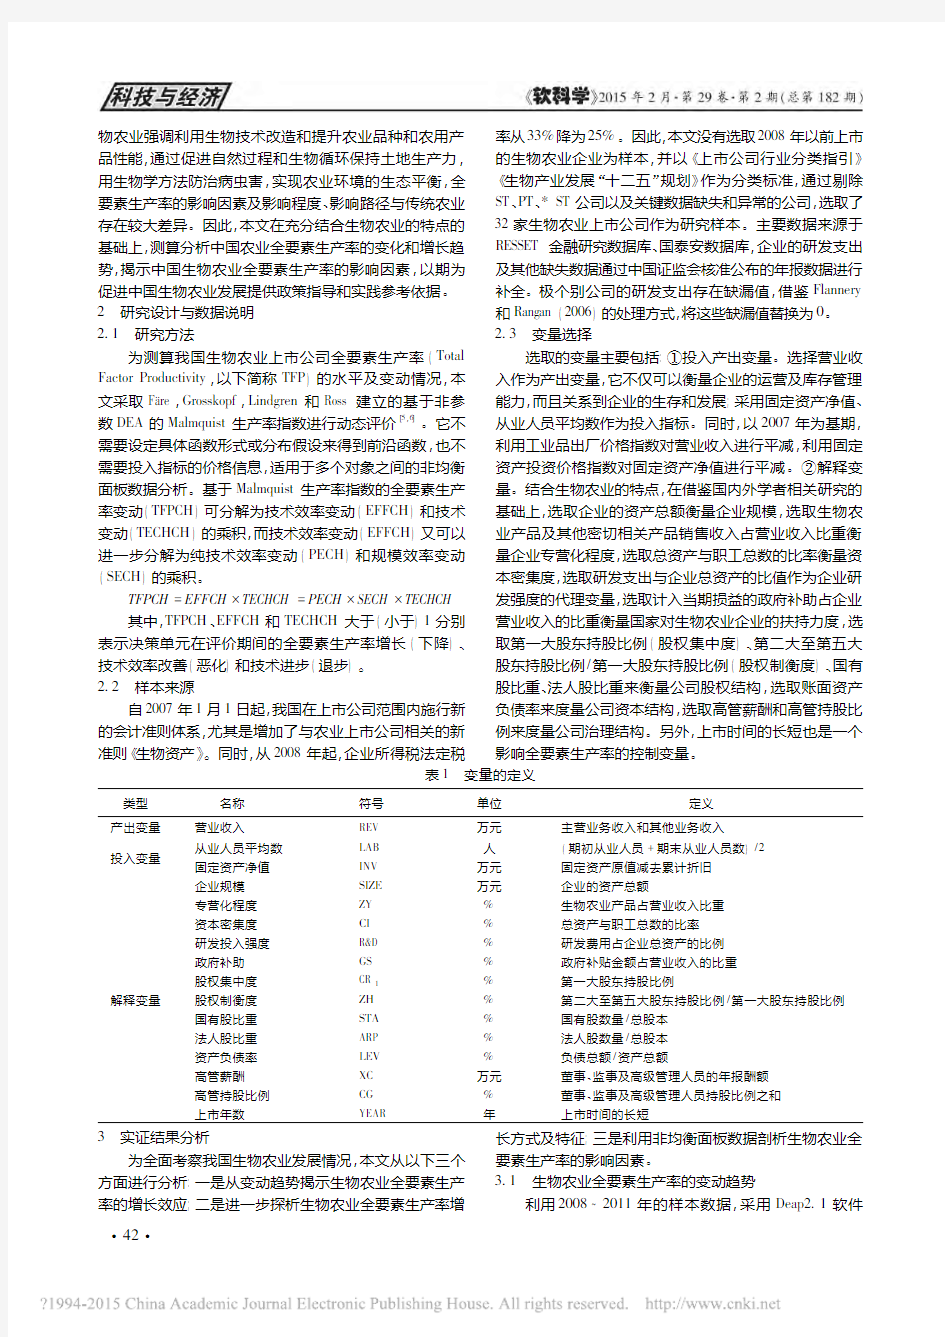 中国生物农业全要素生产率的增长效_省略_研究_对32家上市公司的实证考察_季凯文